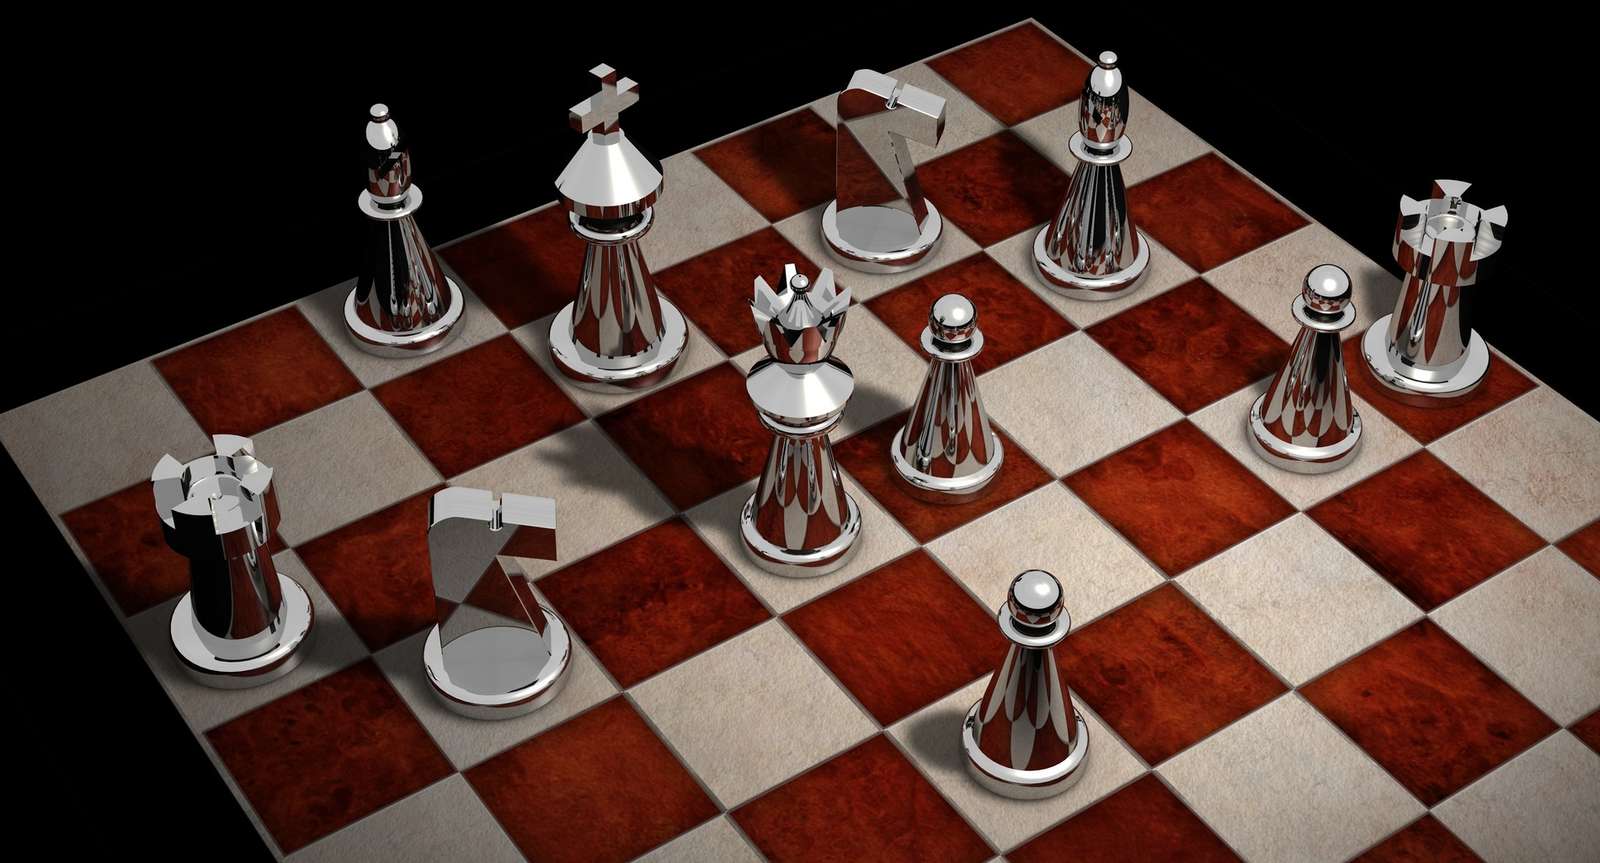 Шахова головоломка пазл онлайн